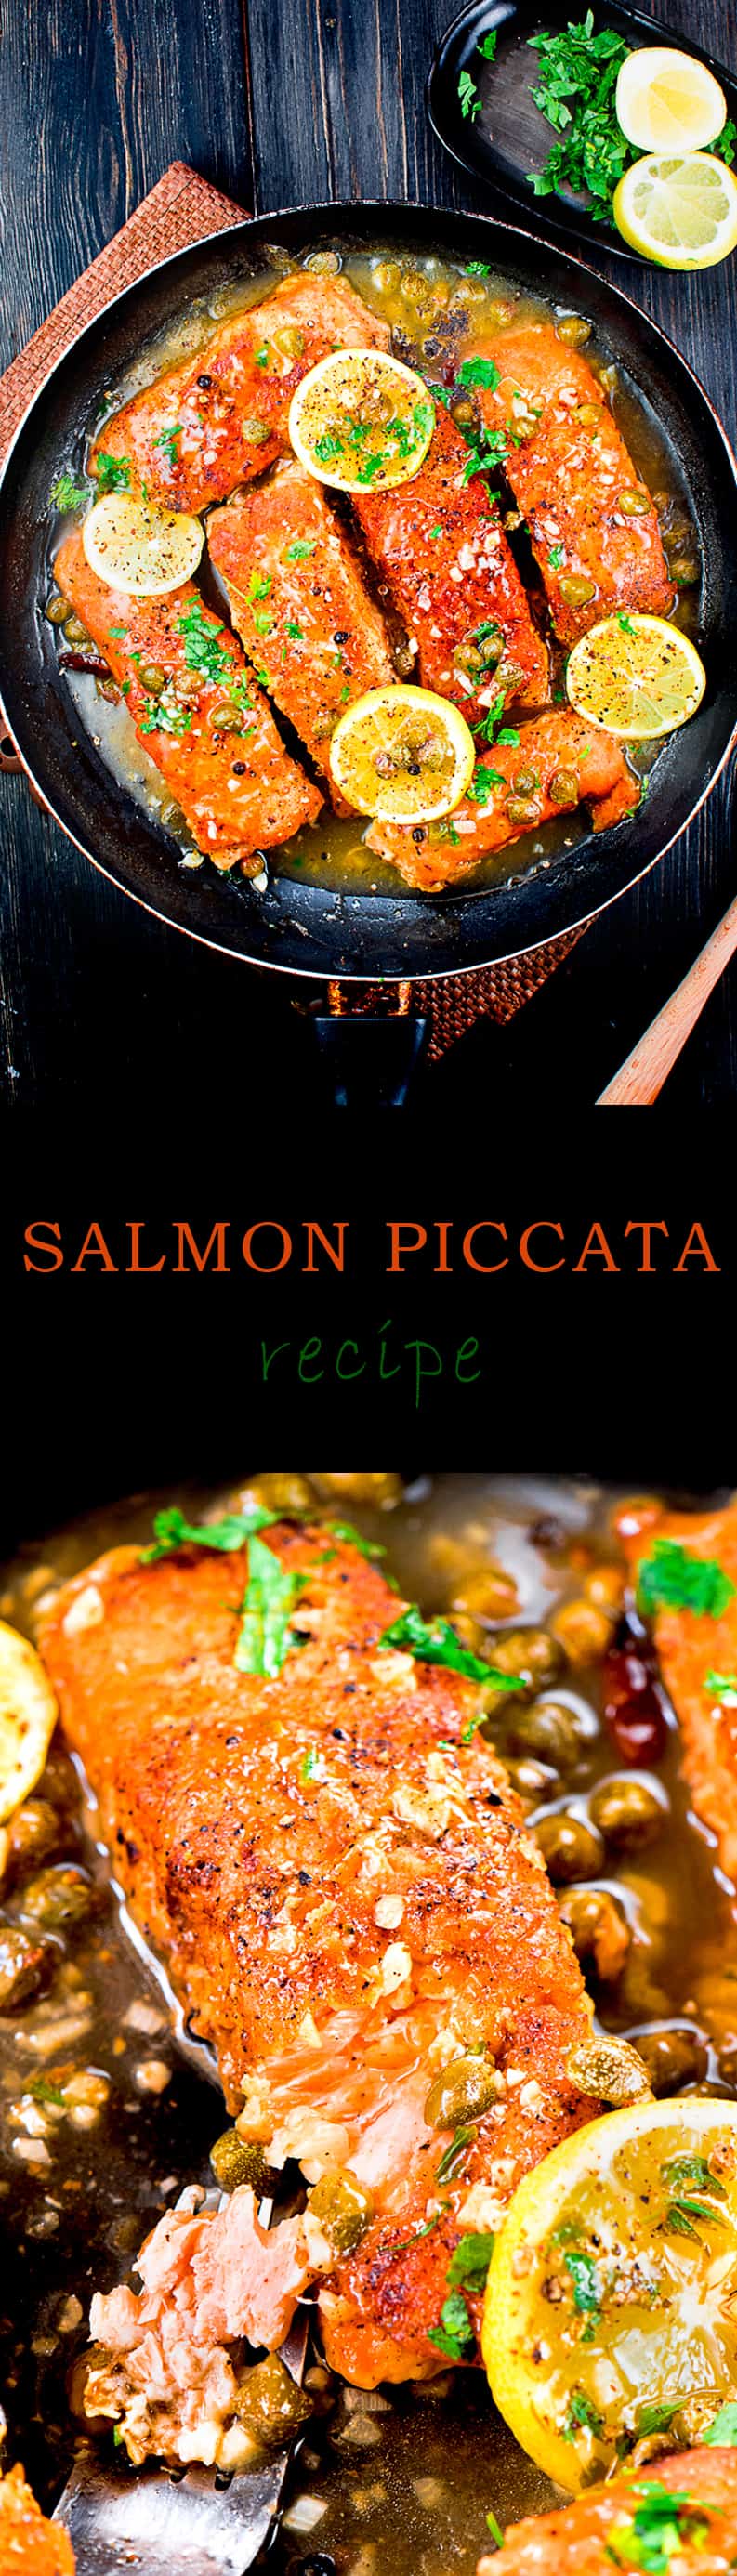 Salmon piccata